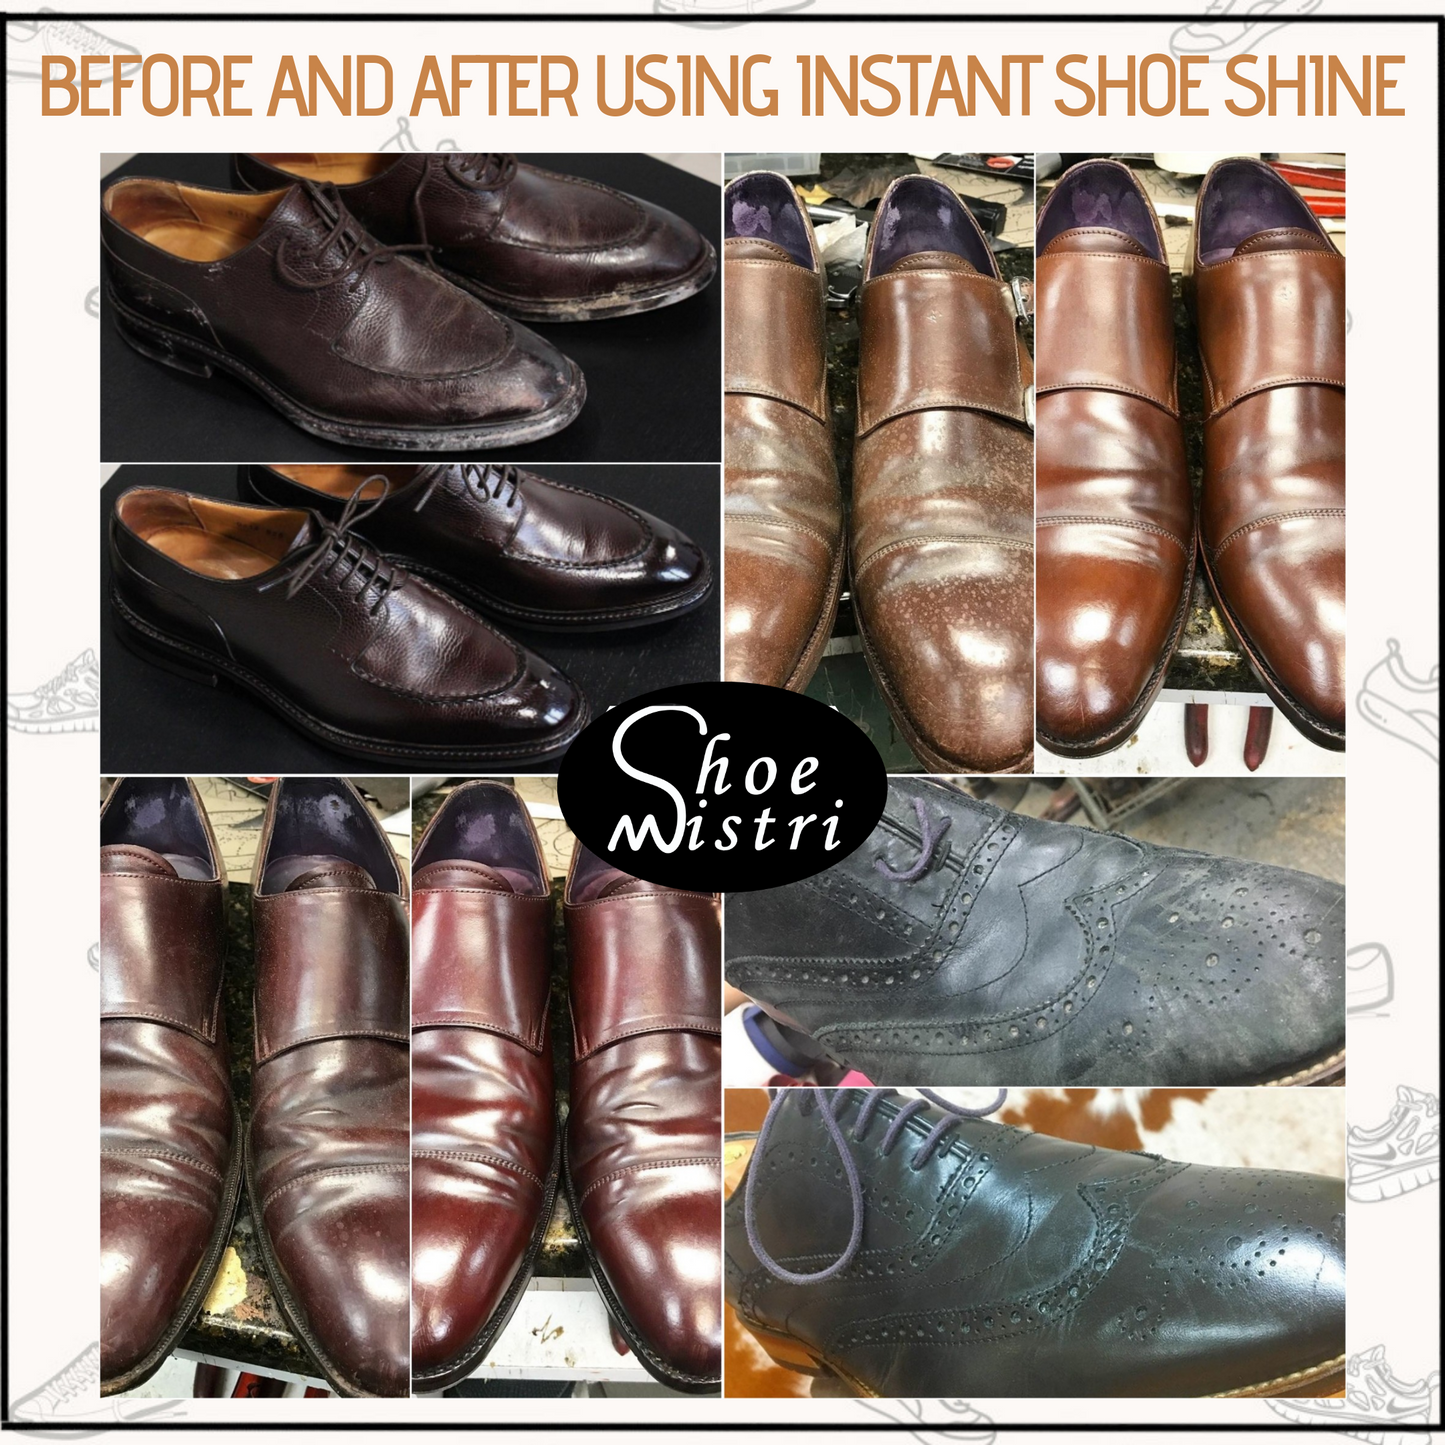 Shoe Mistri Instant Shoe Shine